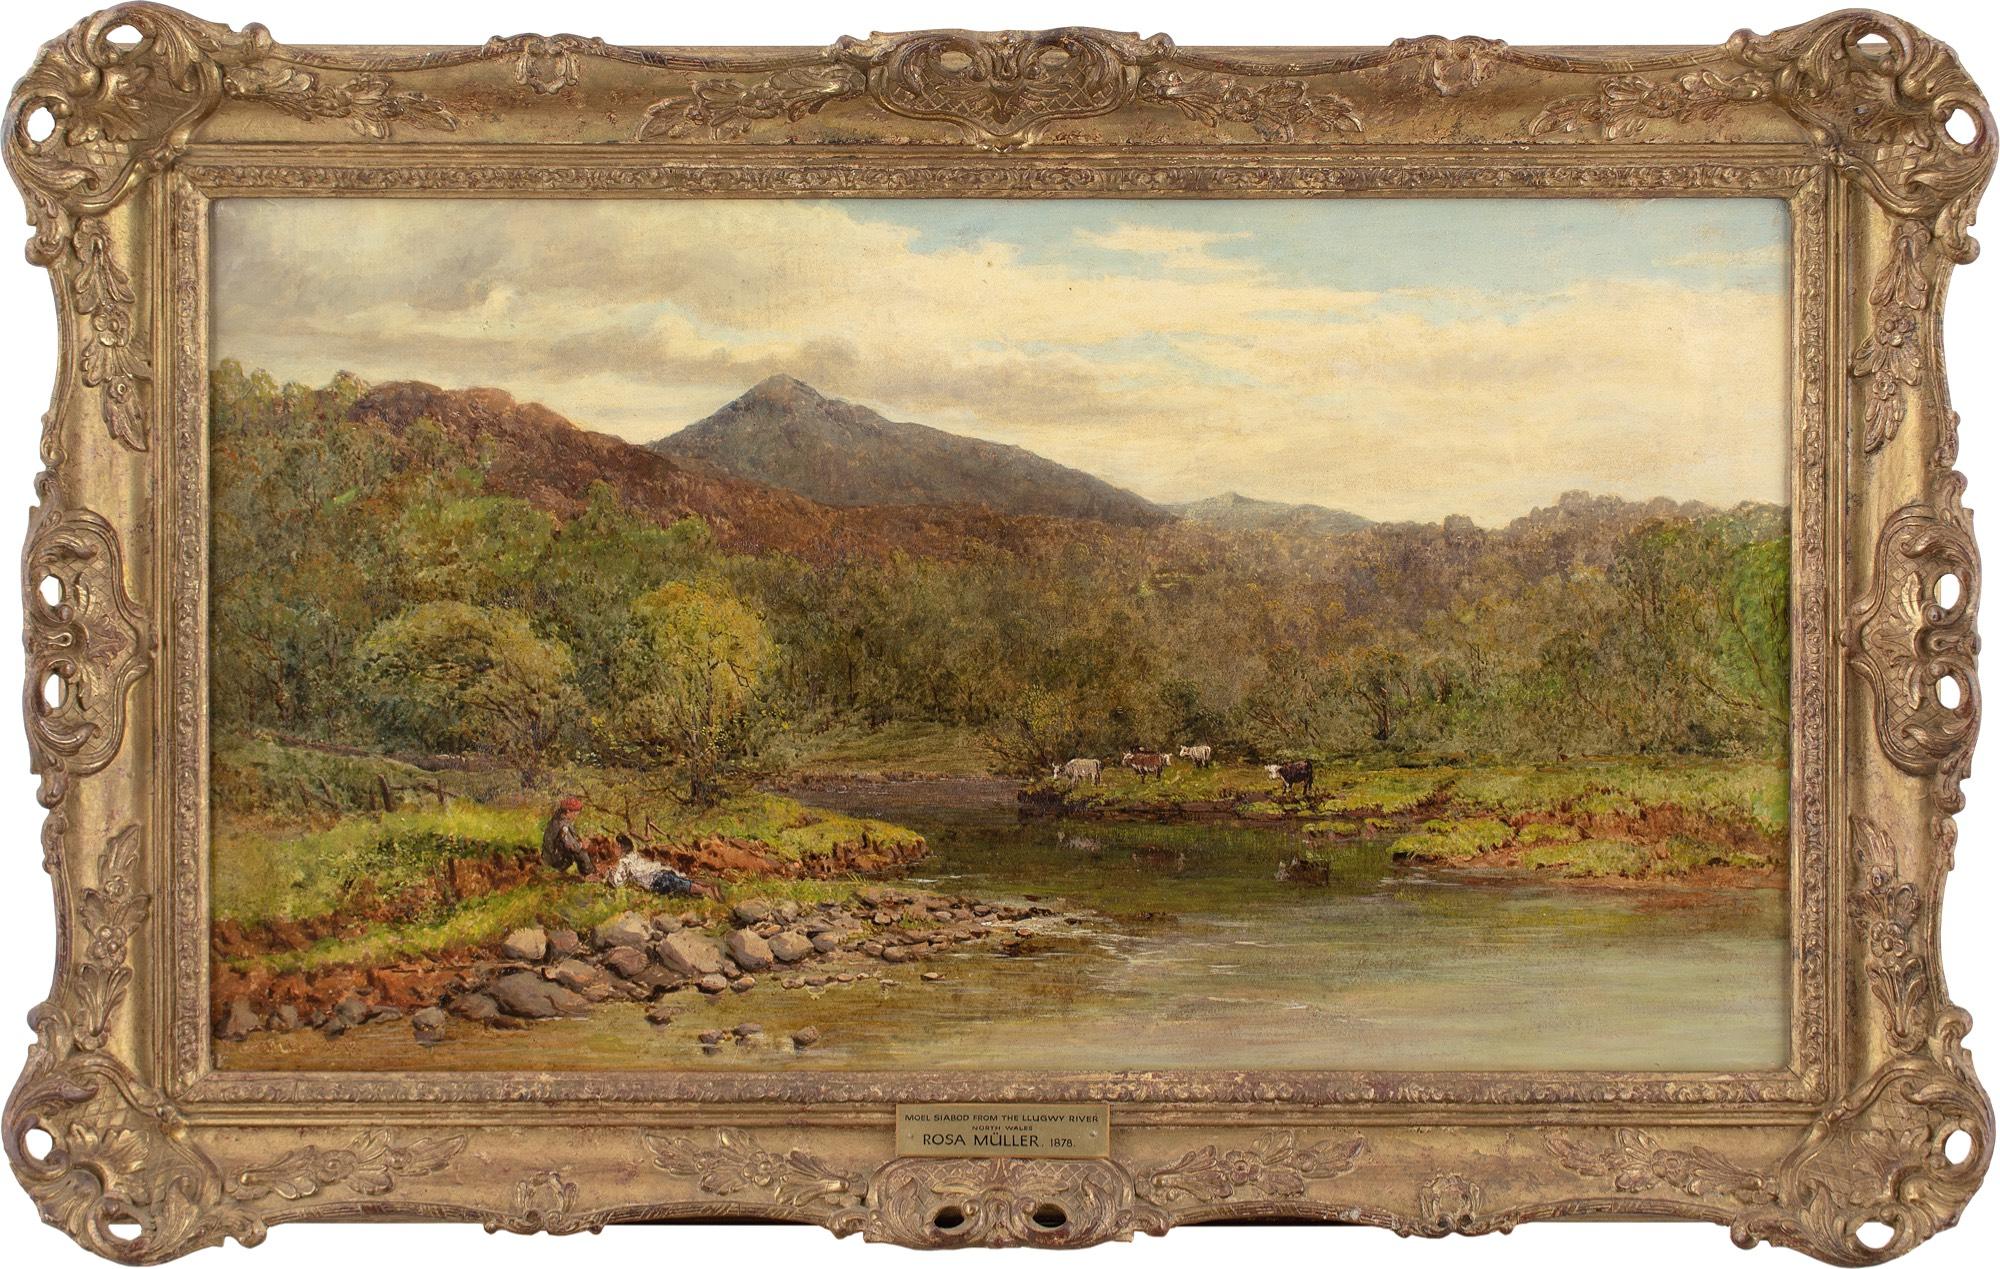 Cette peinture à l'huile de la fin du XIXe siècle de l'artiste britannique Rosa Müller (1822-1914) représente la montagne Moel Siabod en Snowdonia, depuis la sinueuse rivière Llugwy. Deux enfants jouent au bord de la rivière.

Rosa Müller était